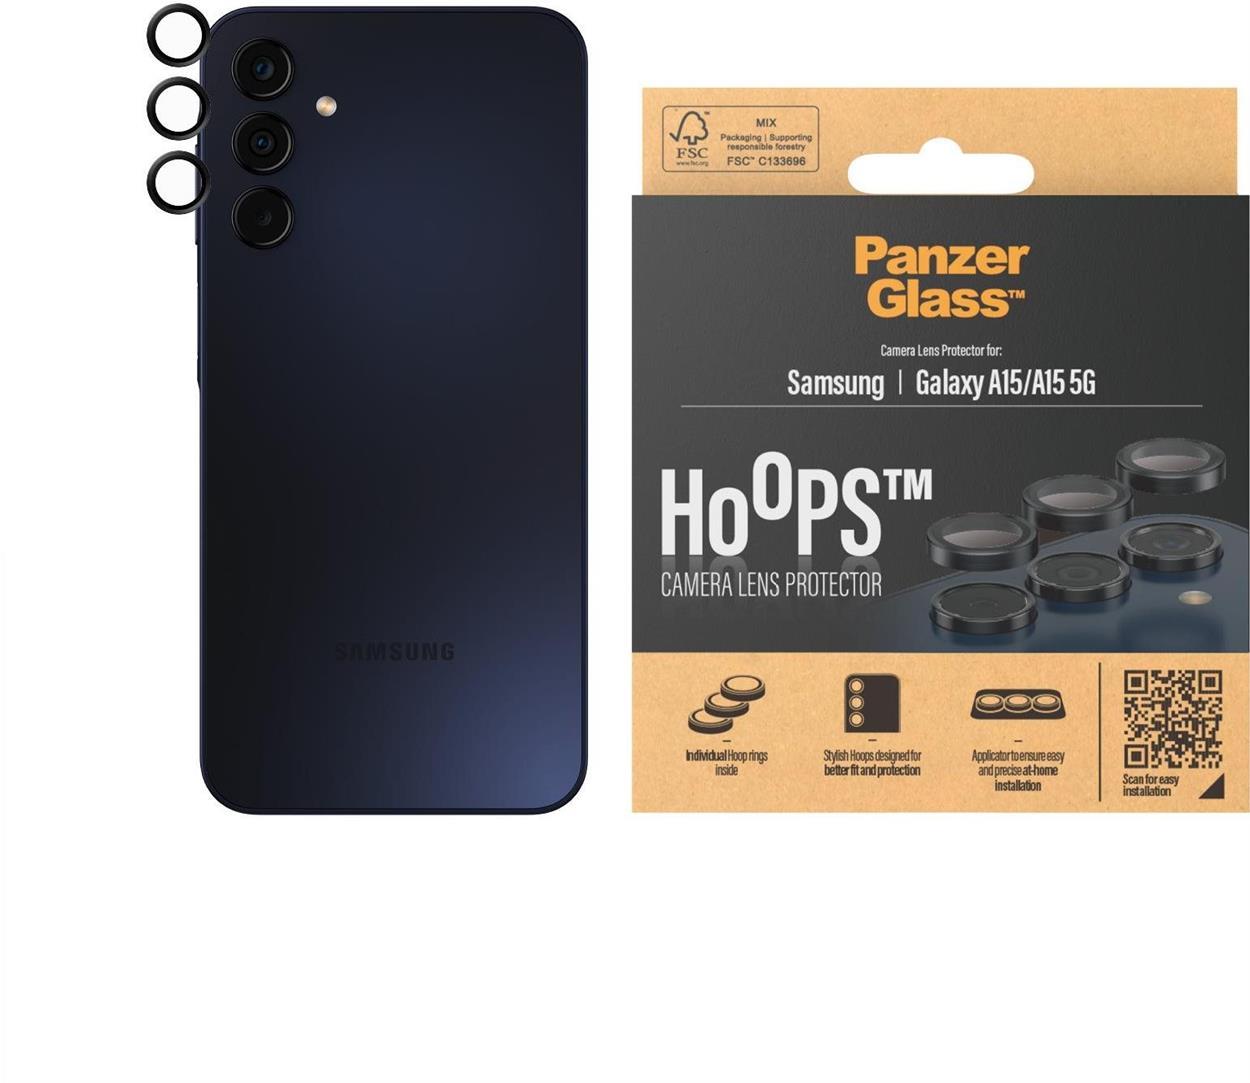 Ochranné sklo na objektív PanzerGlass HoOps Samsung Galaxy A15/A15 5G (ochrana šošoviek fotoaparátu)